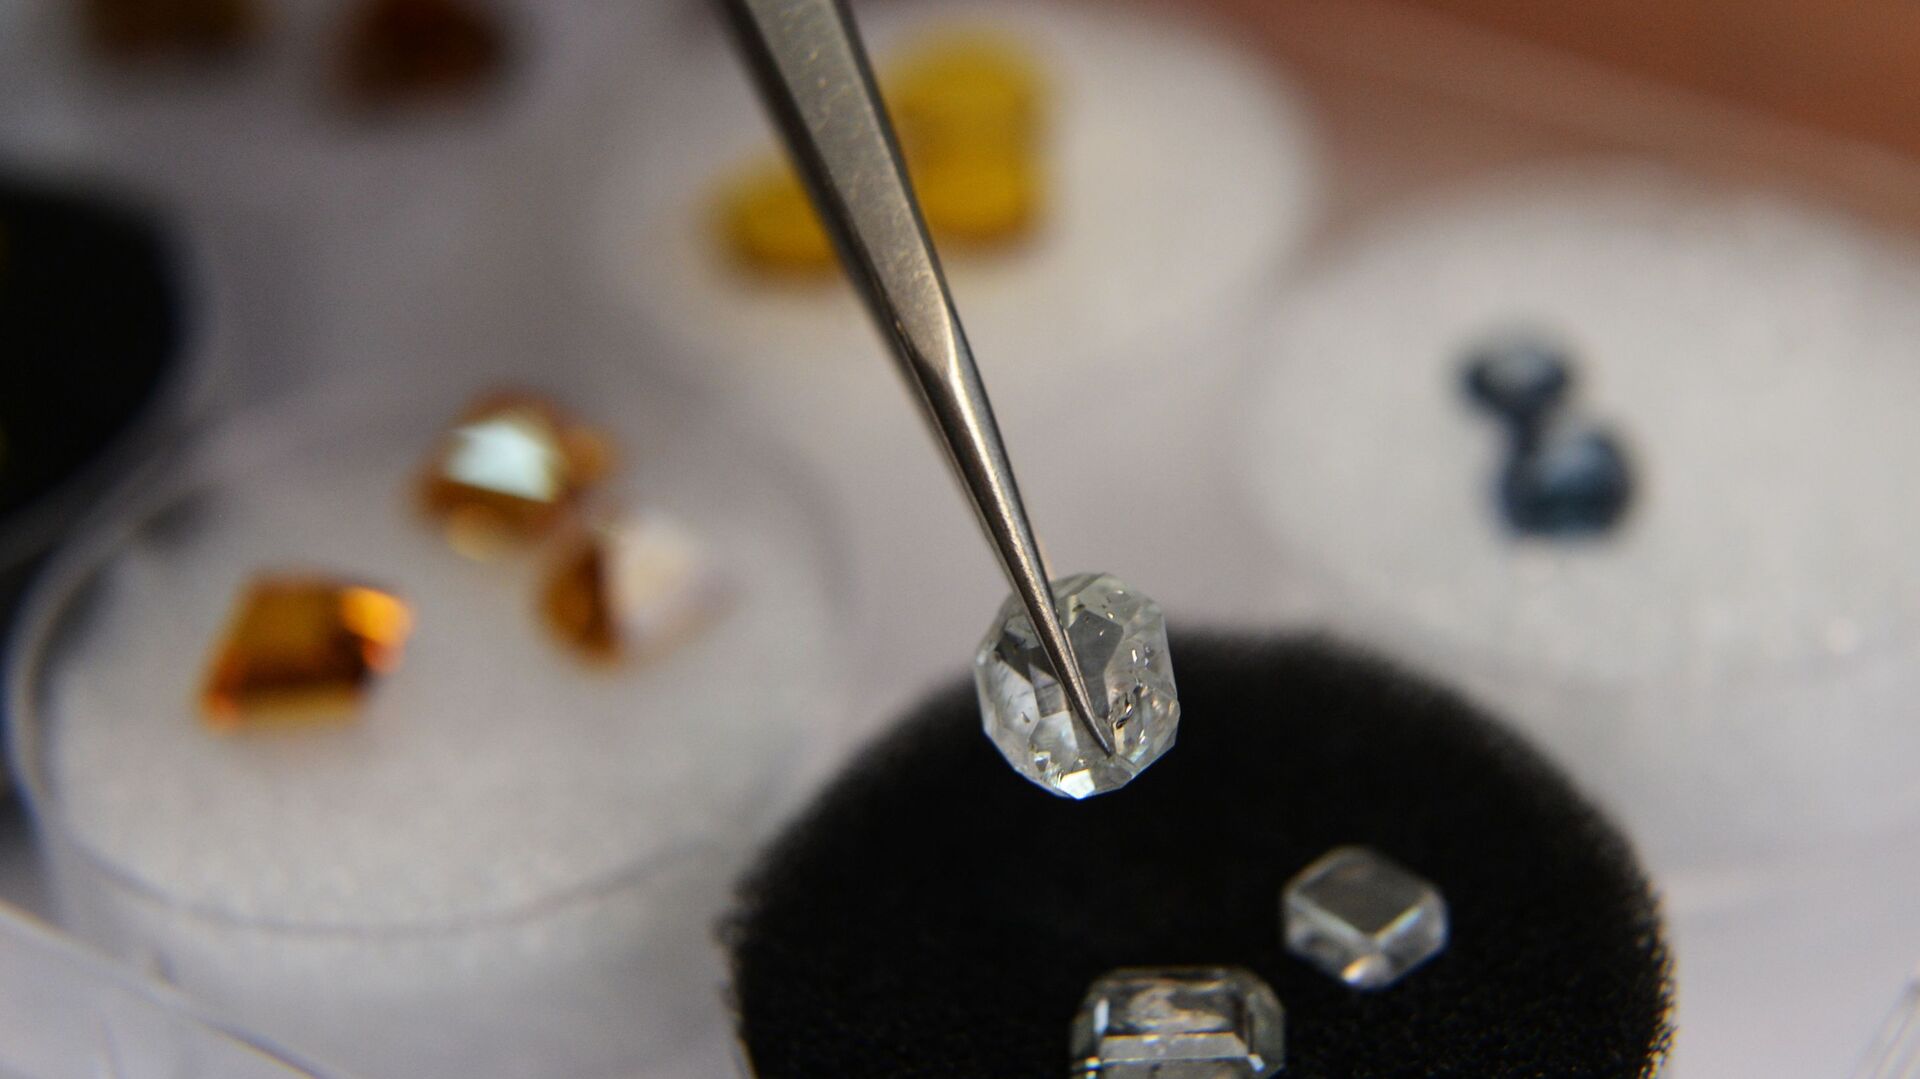 『珠宝』全球一周：北美最大宝石级钻石原石「Diavik Foxfire」将在华盛顿展出；2016年诺贝尔和平奖奖章将由「公平采矿」黄金制作 | iDaily Jewelry · 每日珠宝杂志